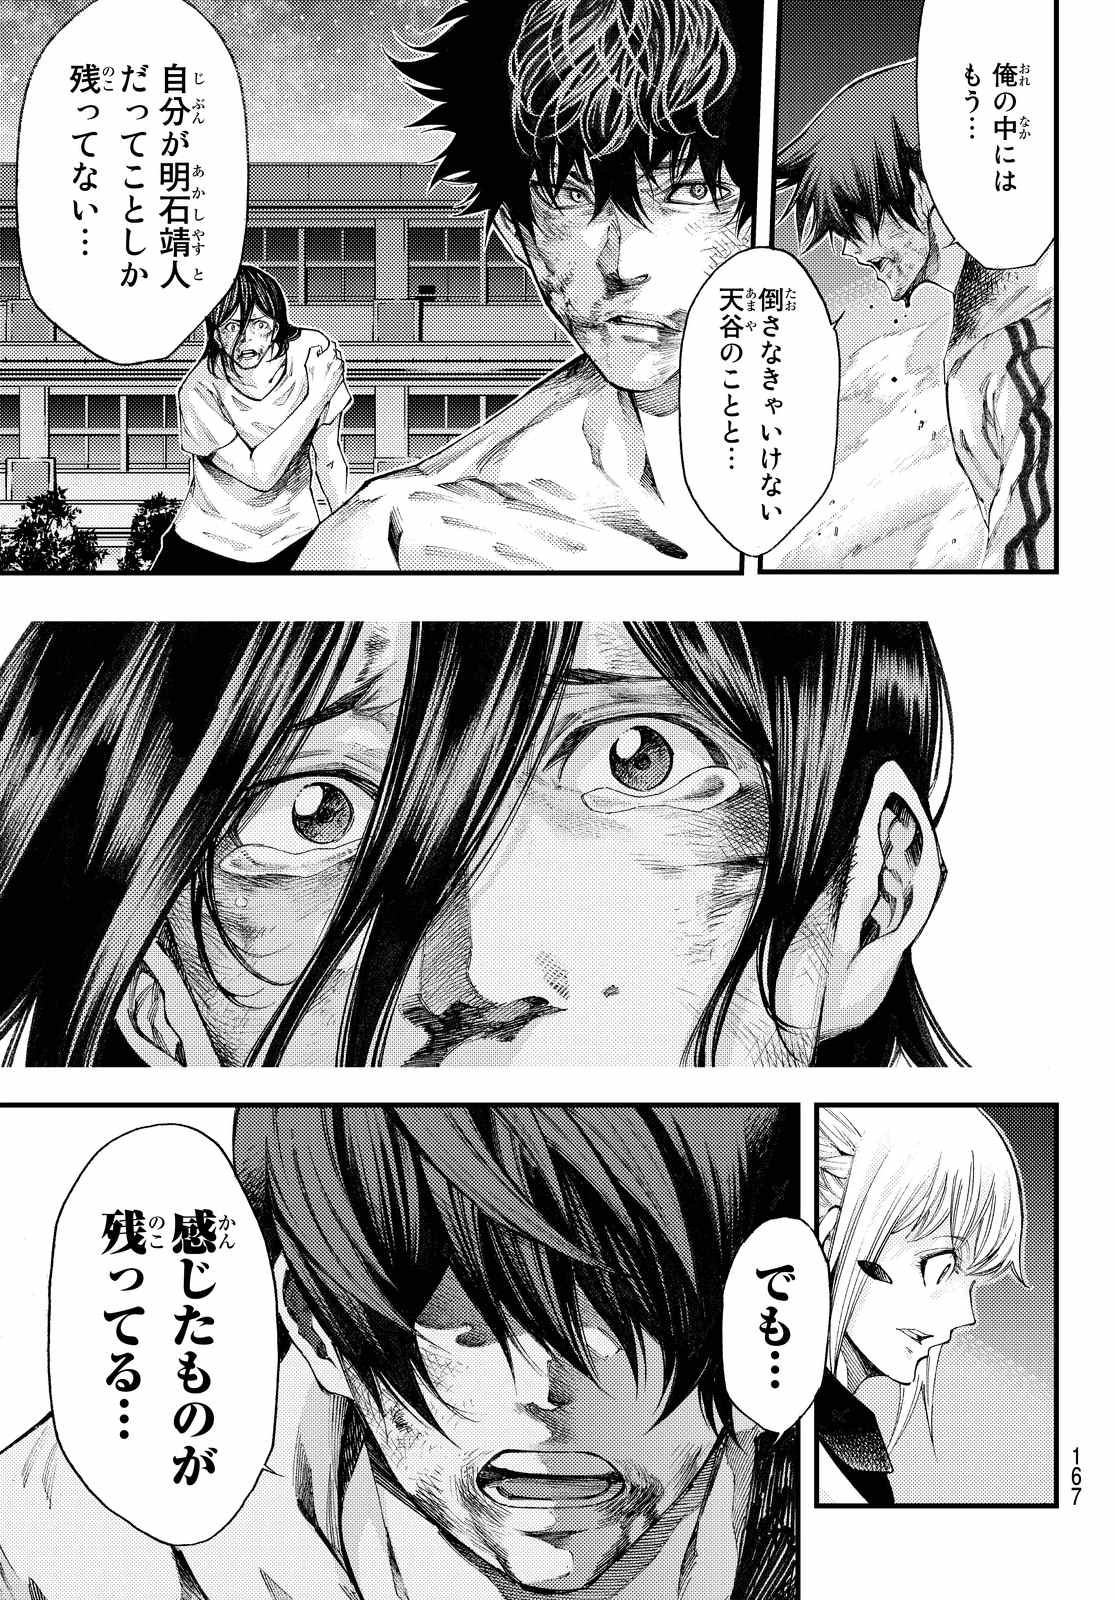 Kamisama no Ituori - Chapter 184 - Page 3